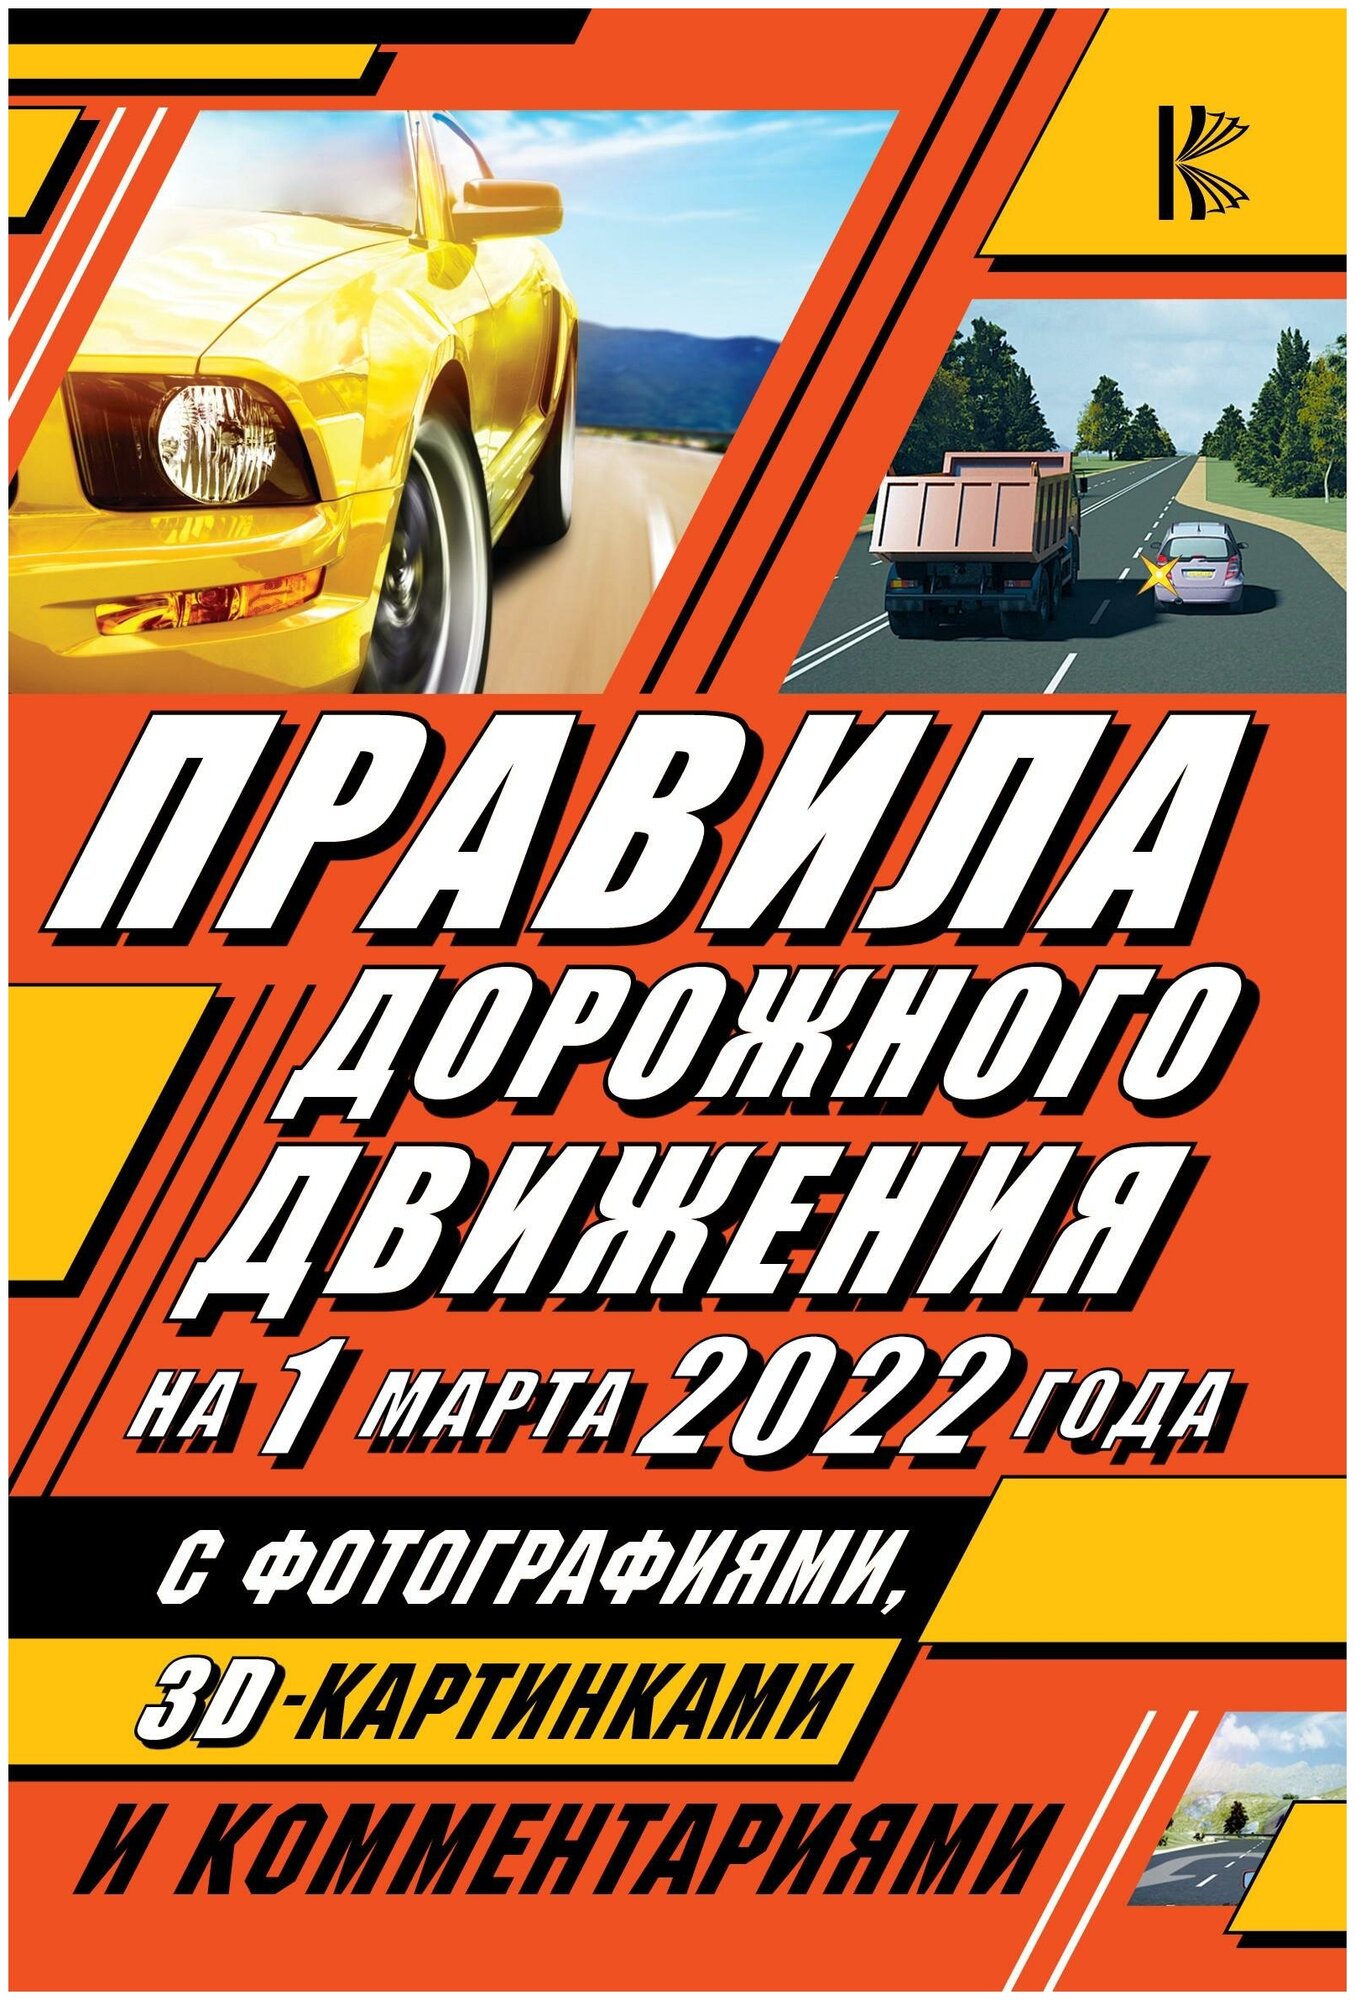 . Правила дорожного движения на 1 марта 2022 года с фотографиями, 3D-картинками и комментариями. ПДД